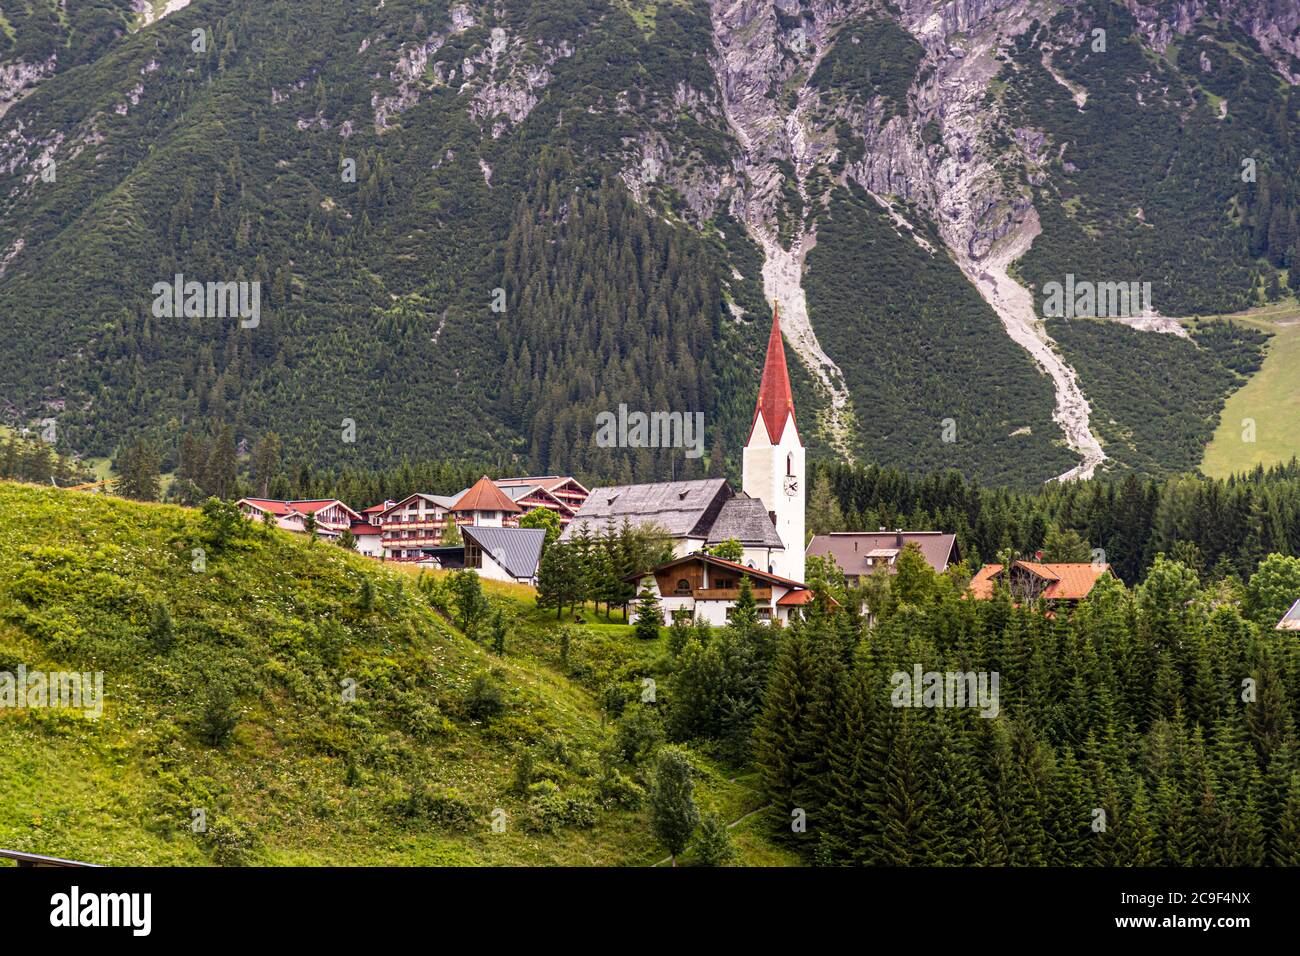 Community Berwang, Austria Stock Photo